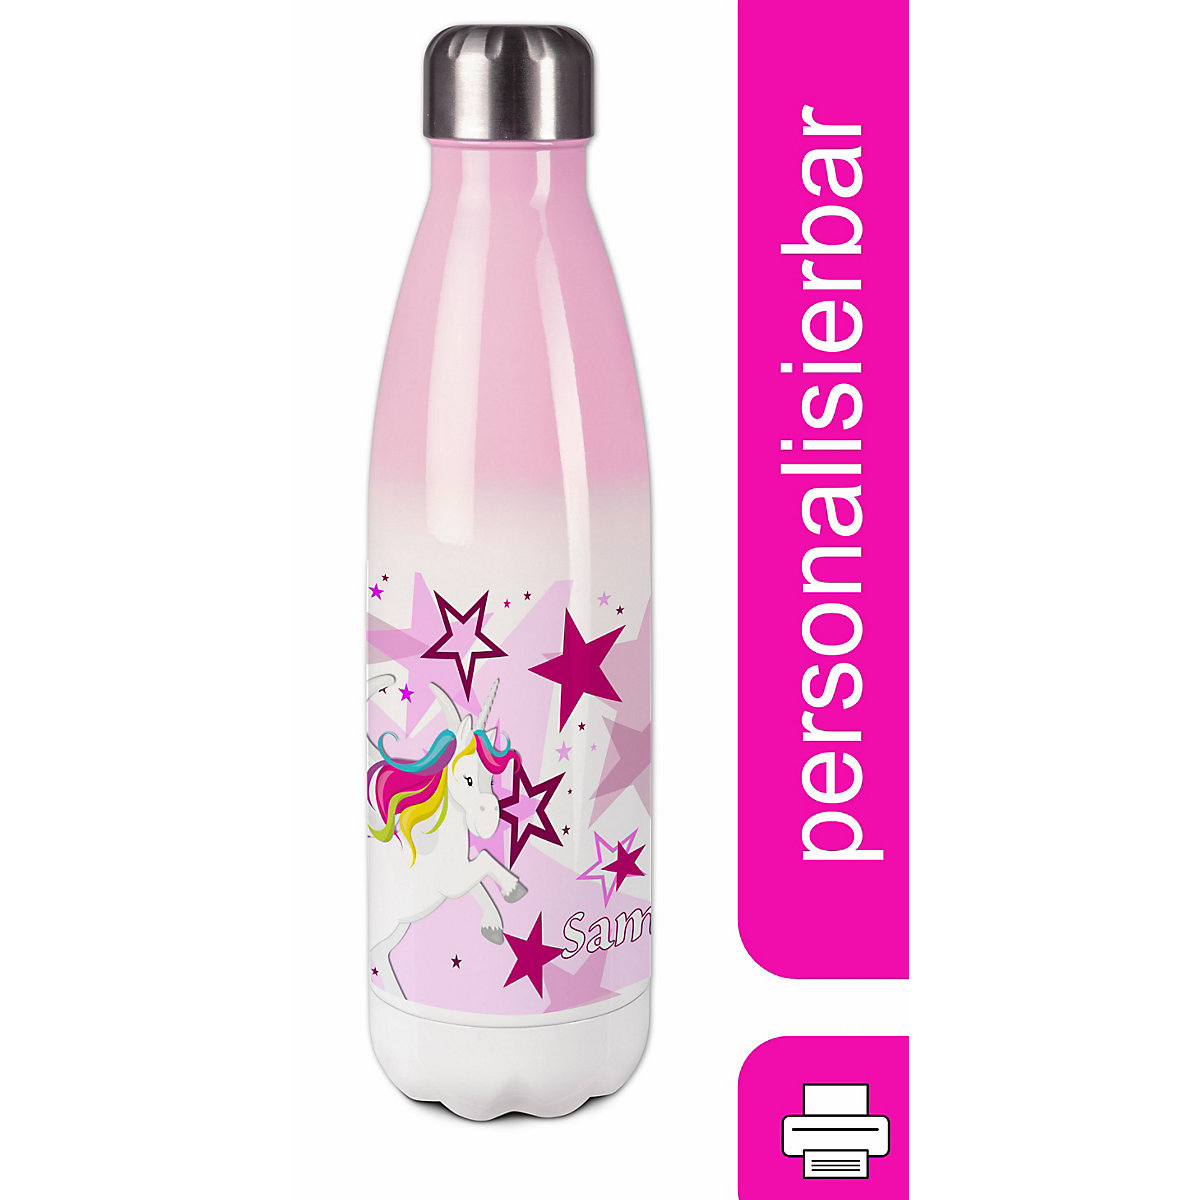 CreaDesign Edelstahl Kinder Thermoflasche / Trinkflasche bunt Pegasus Sterne Farbe rosa Spülmaschinenfest Auslaufsicher Bruchfest Doppelwandig Für Heißgetränke geeignet Mit Deckel Isoliert